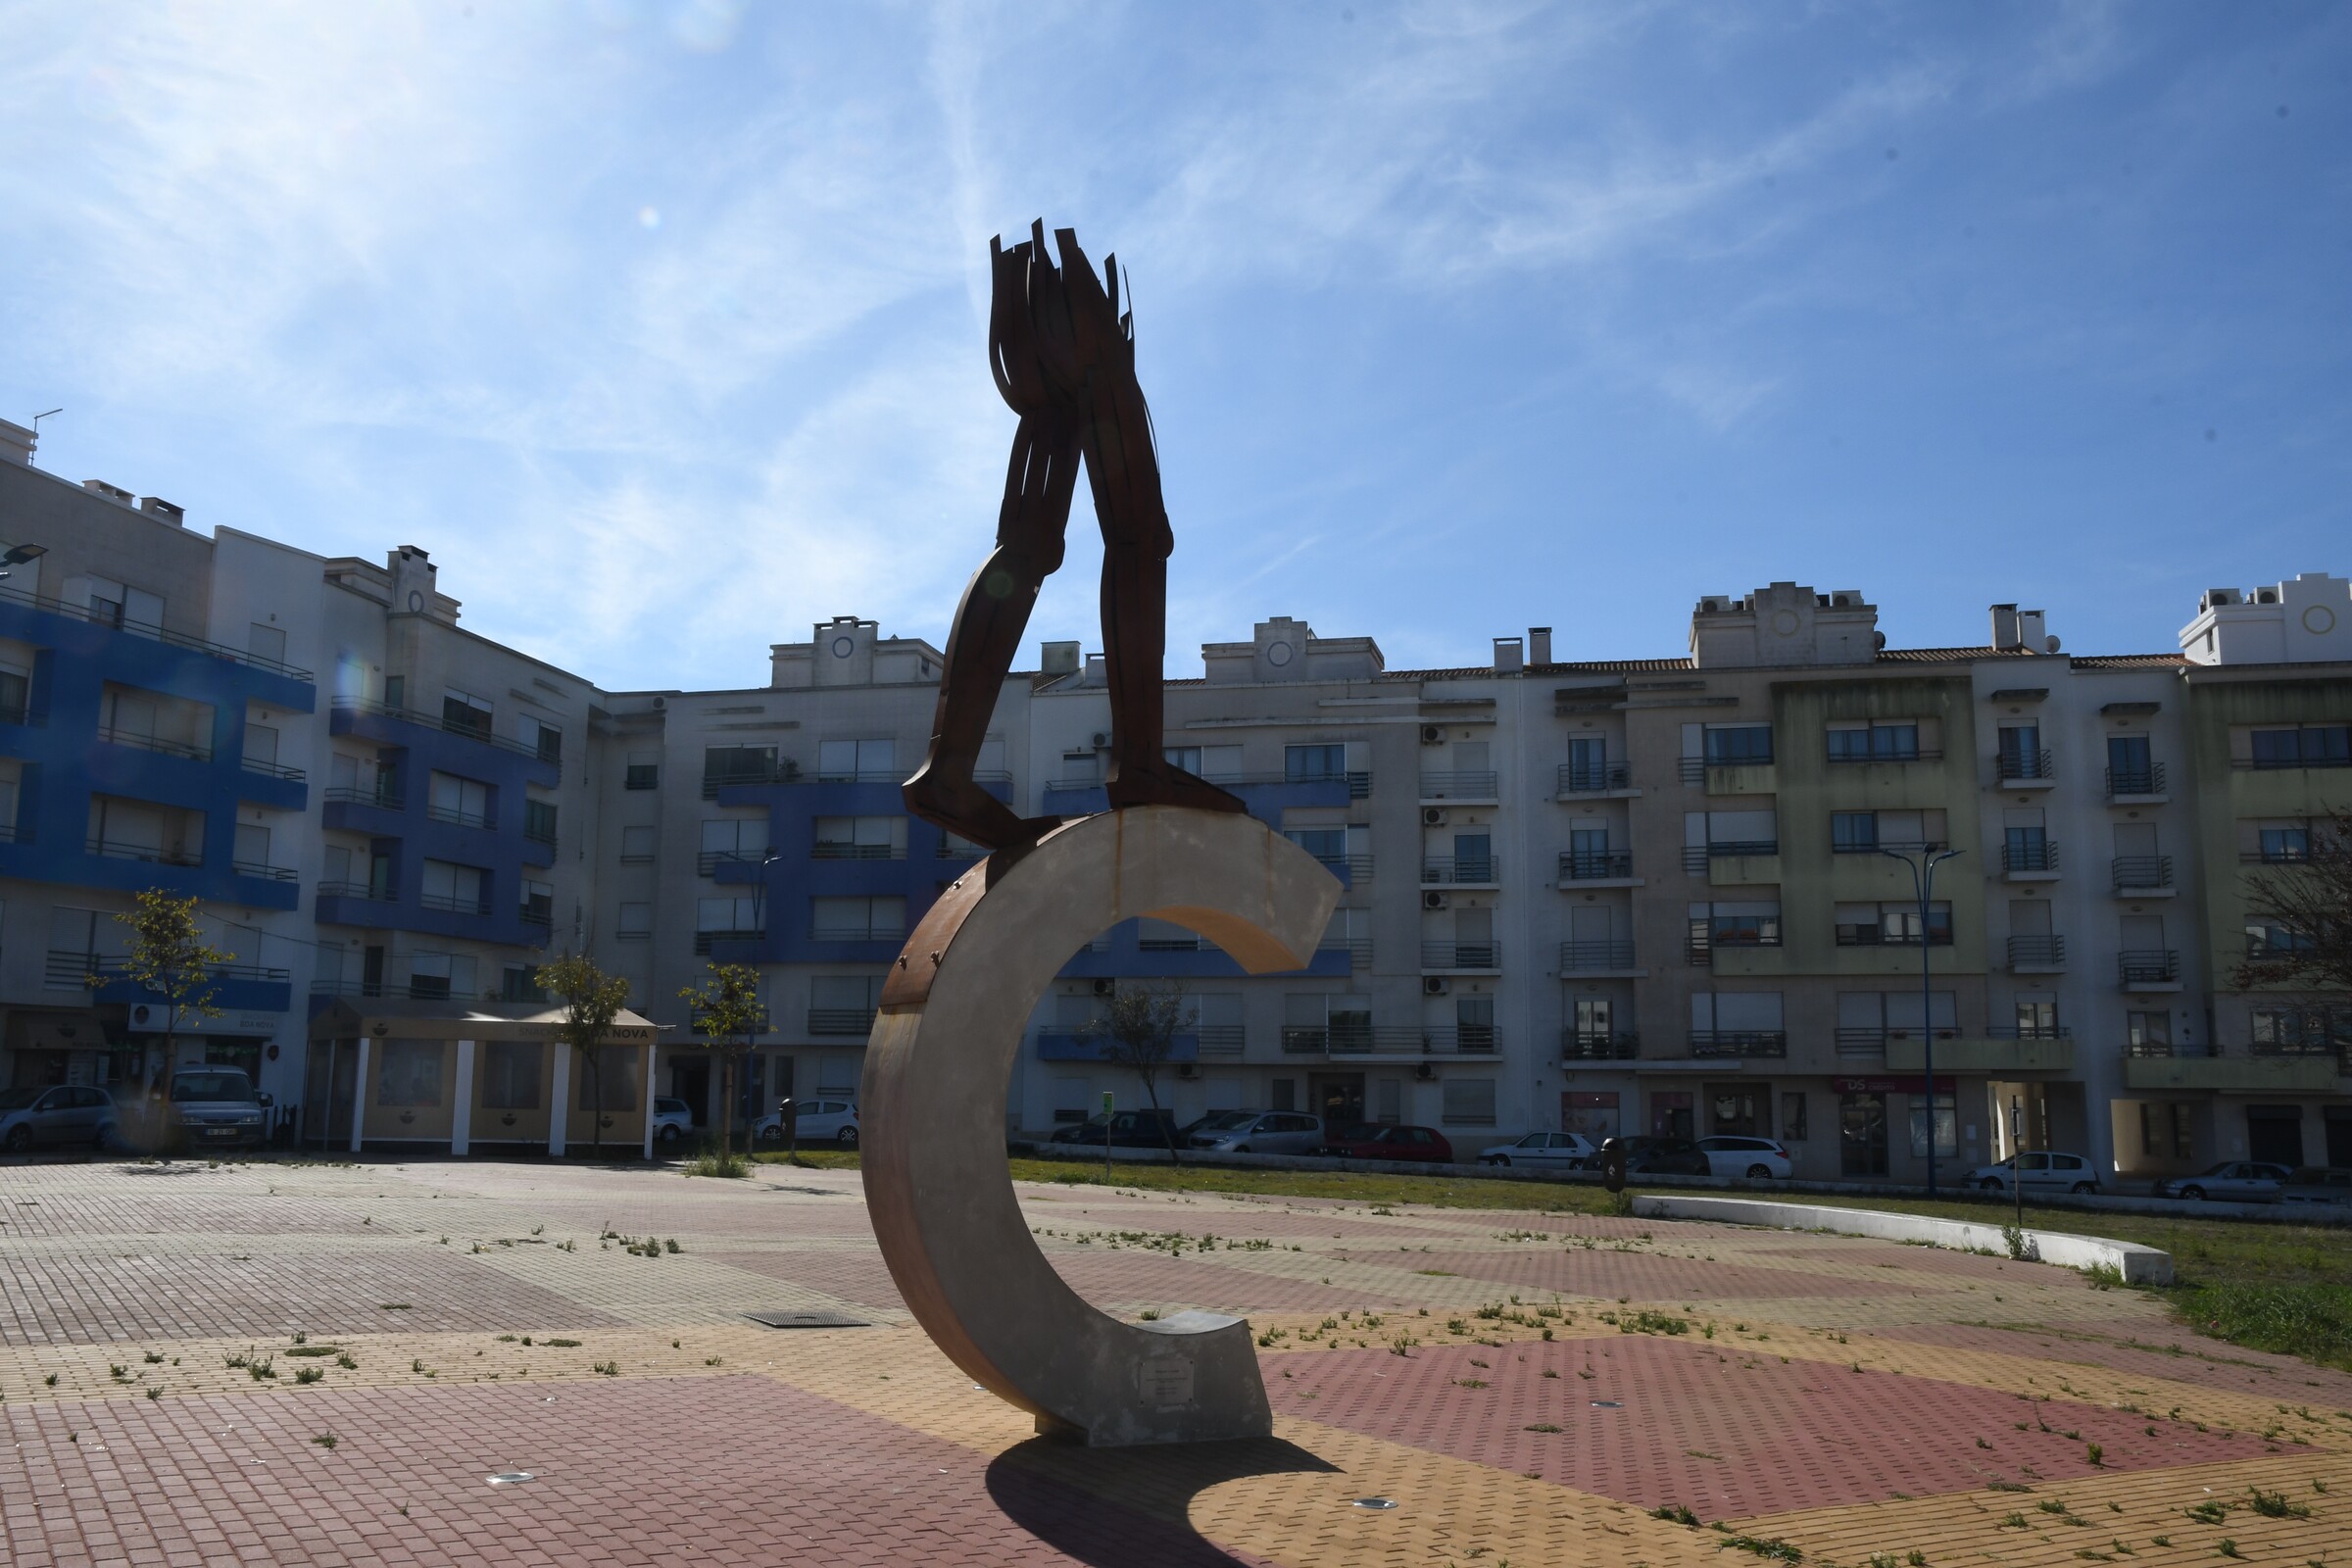 15. Escultura Pública “Monumento à Liberdade”